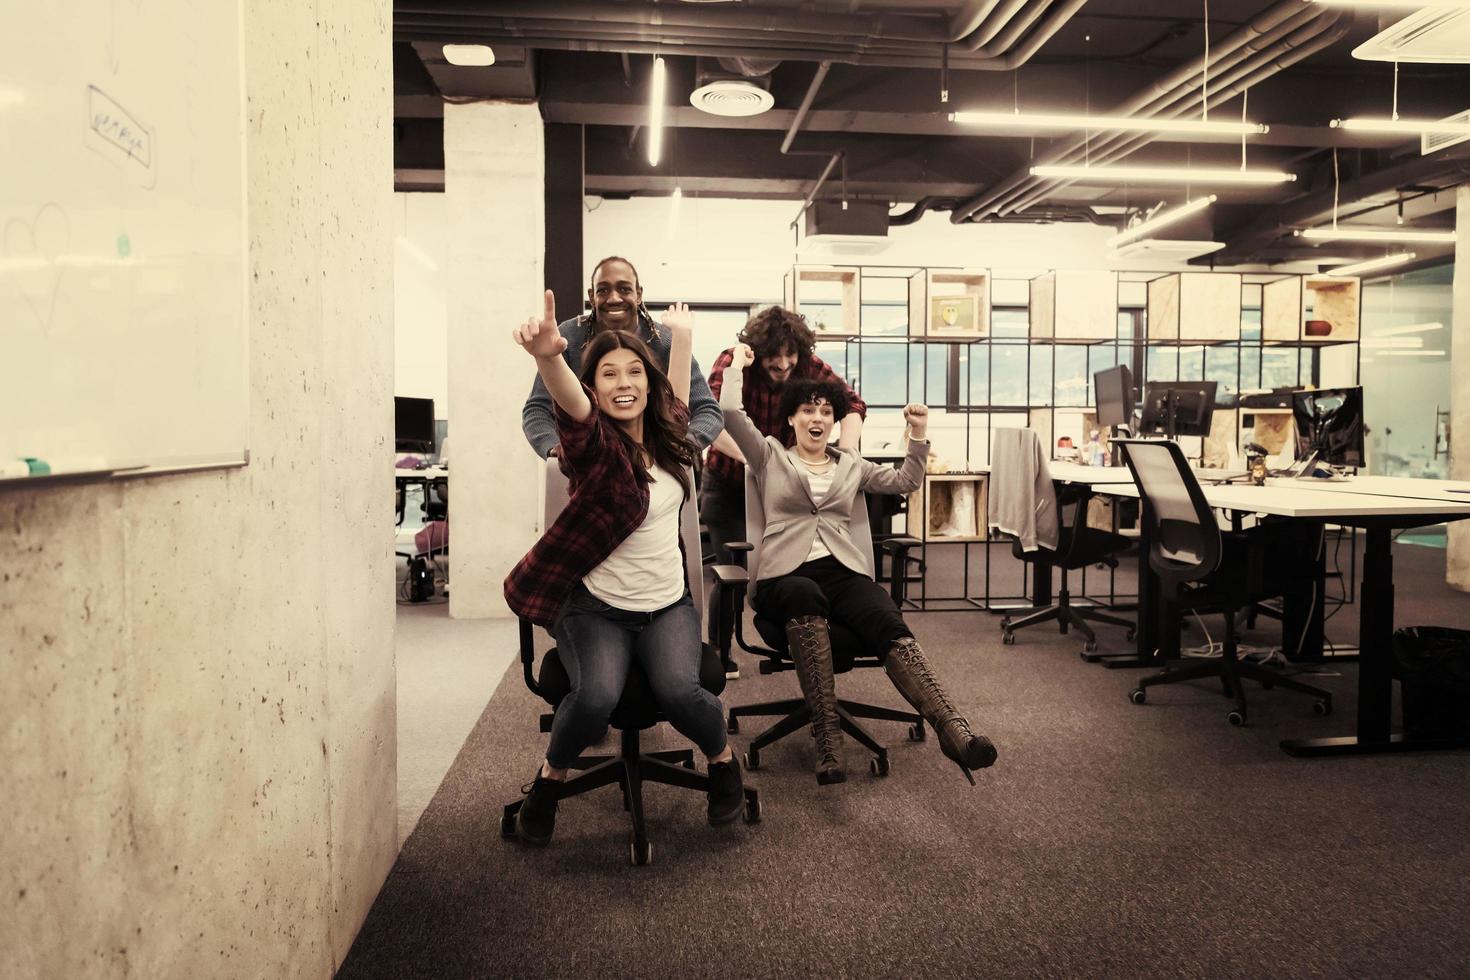 course d'équipe commerciale multiethnique sur des chaises de bureau photo